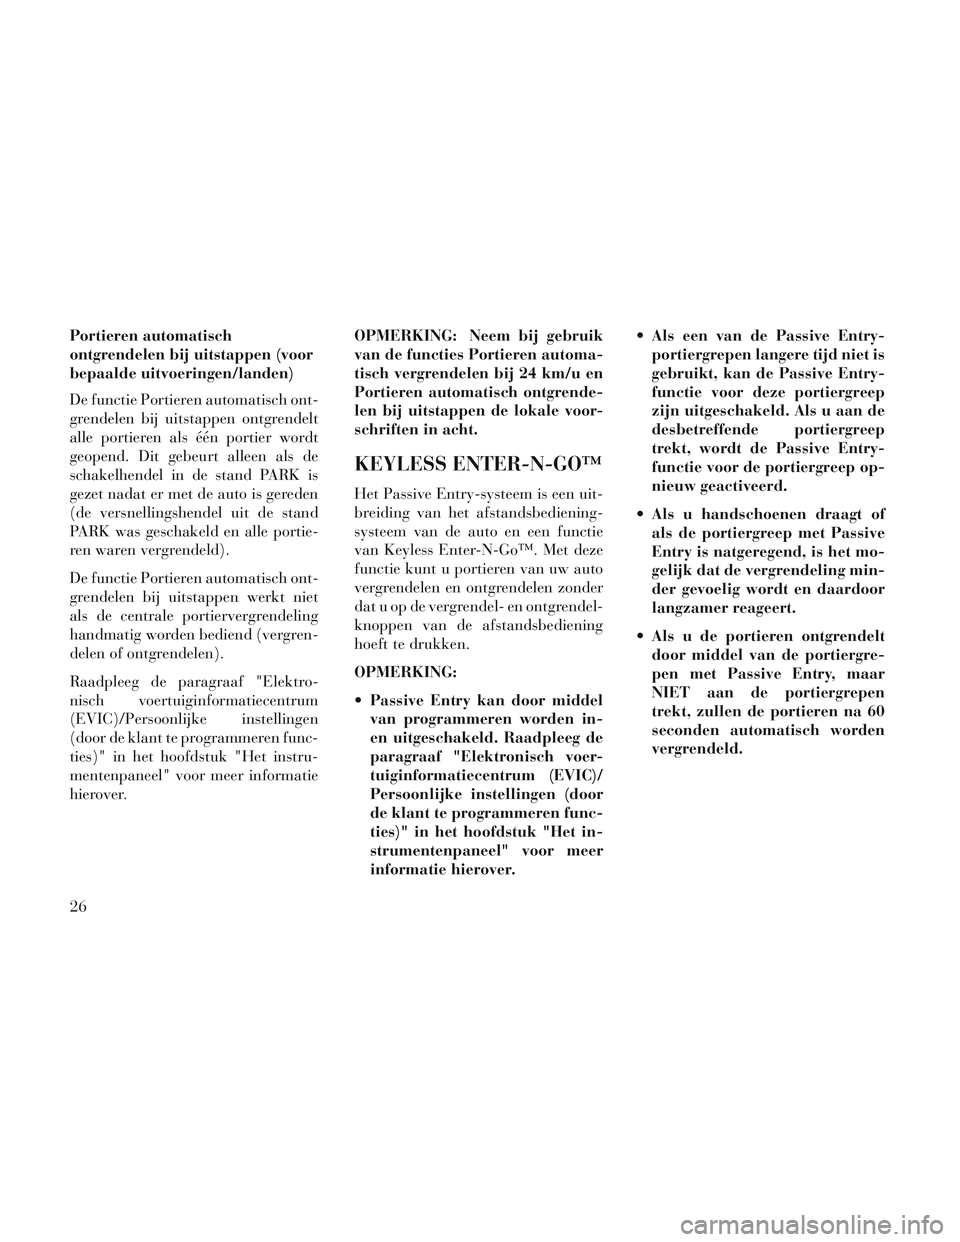 Lancia Voyager 2014  Instructieboek (in Dutch) Portieren automatisch
ontgrendelen bij uitstappen (voor
bepaalde uitvoeringen/landen)
De functie Portieren automatisch ont-
grendelen bij uitstappen ontgrendelt
alle portieren als één portier wordt
